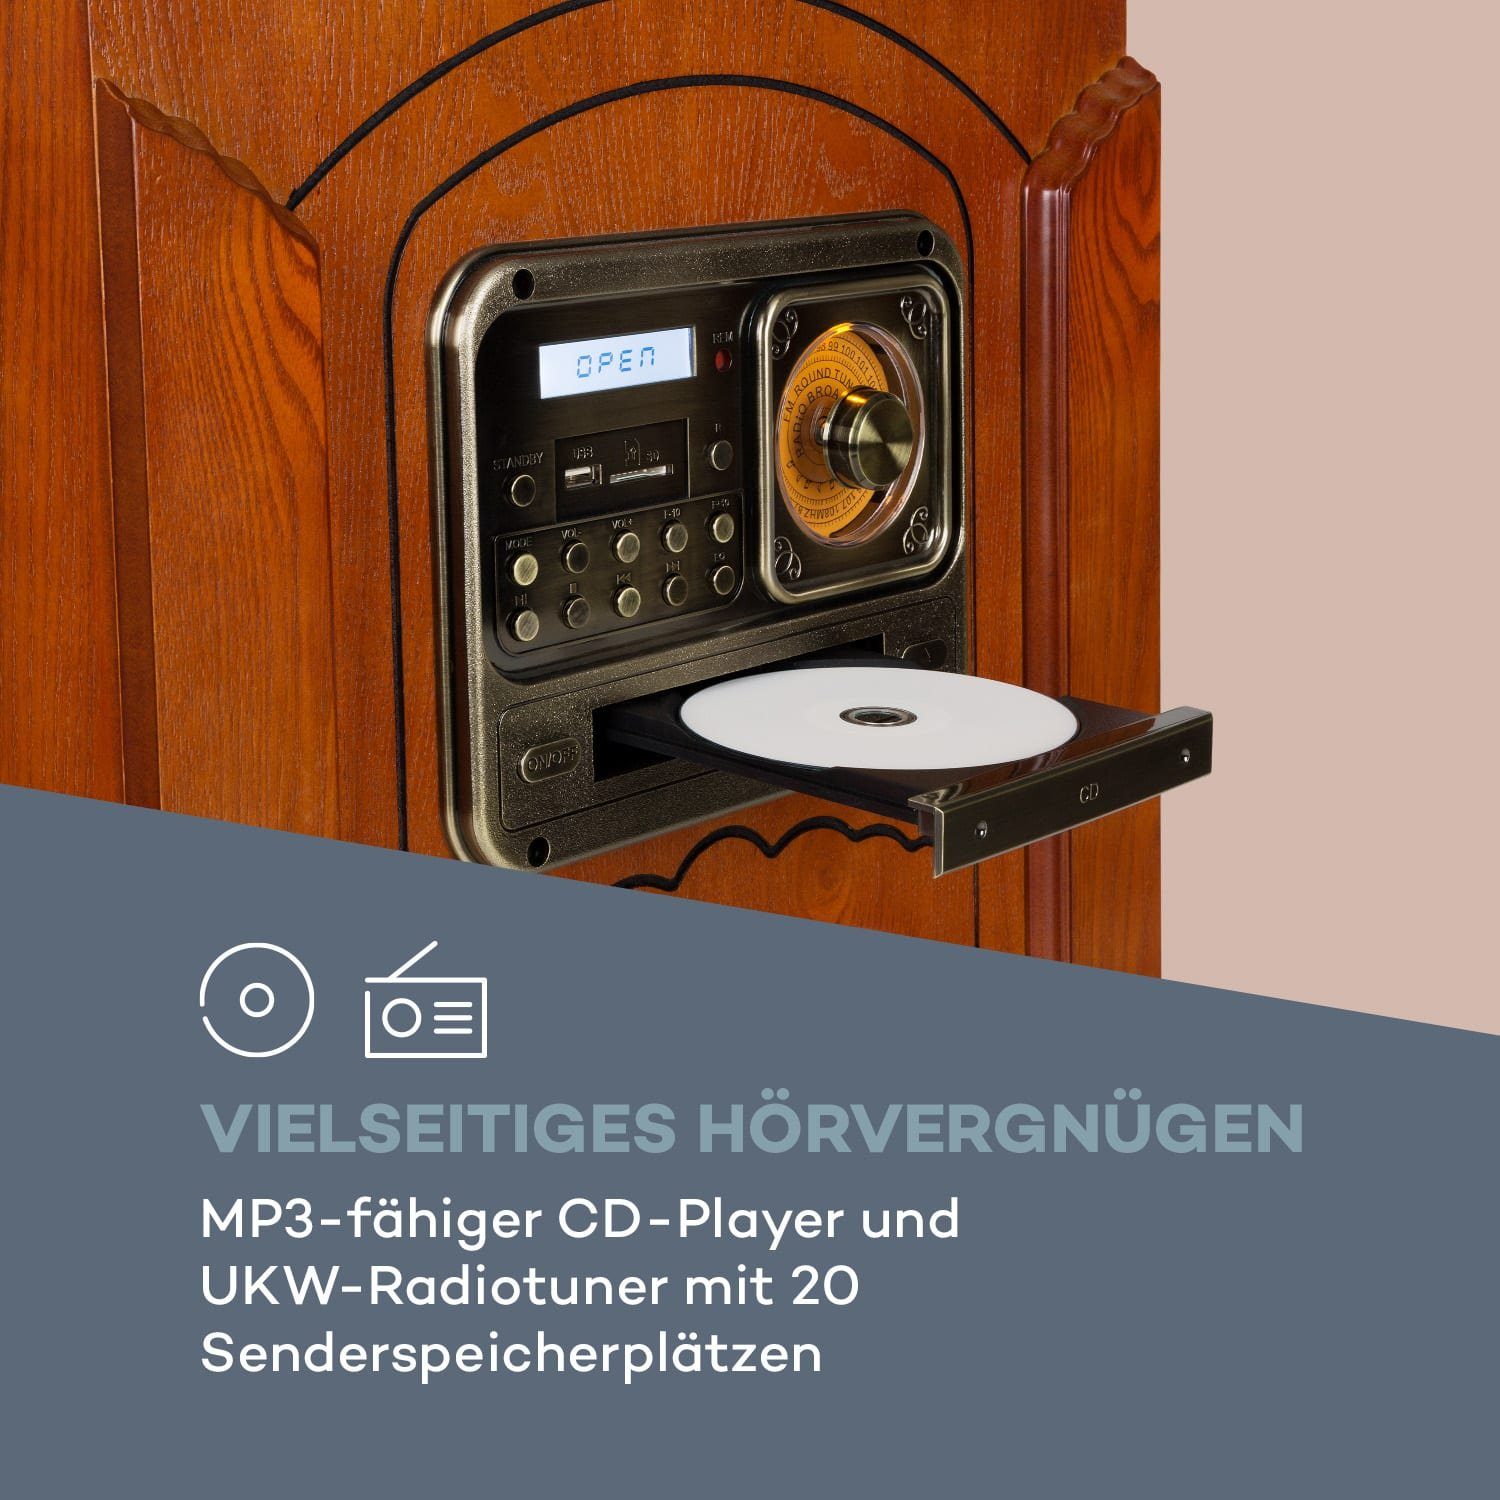 Musicbox Senderspeicherplätzen) Auna Stereoanlage 20 (UKW-Radiotuner mit